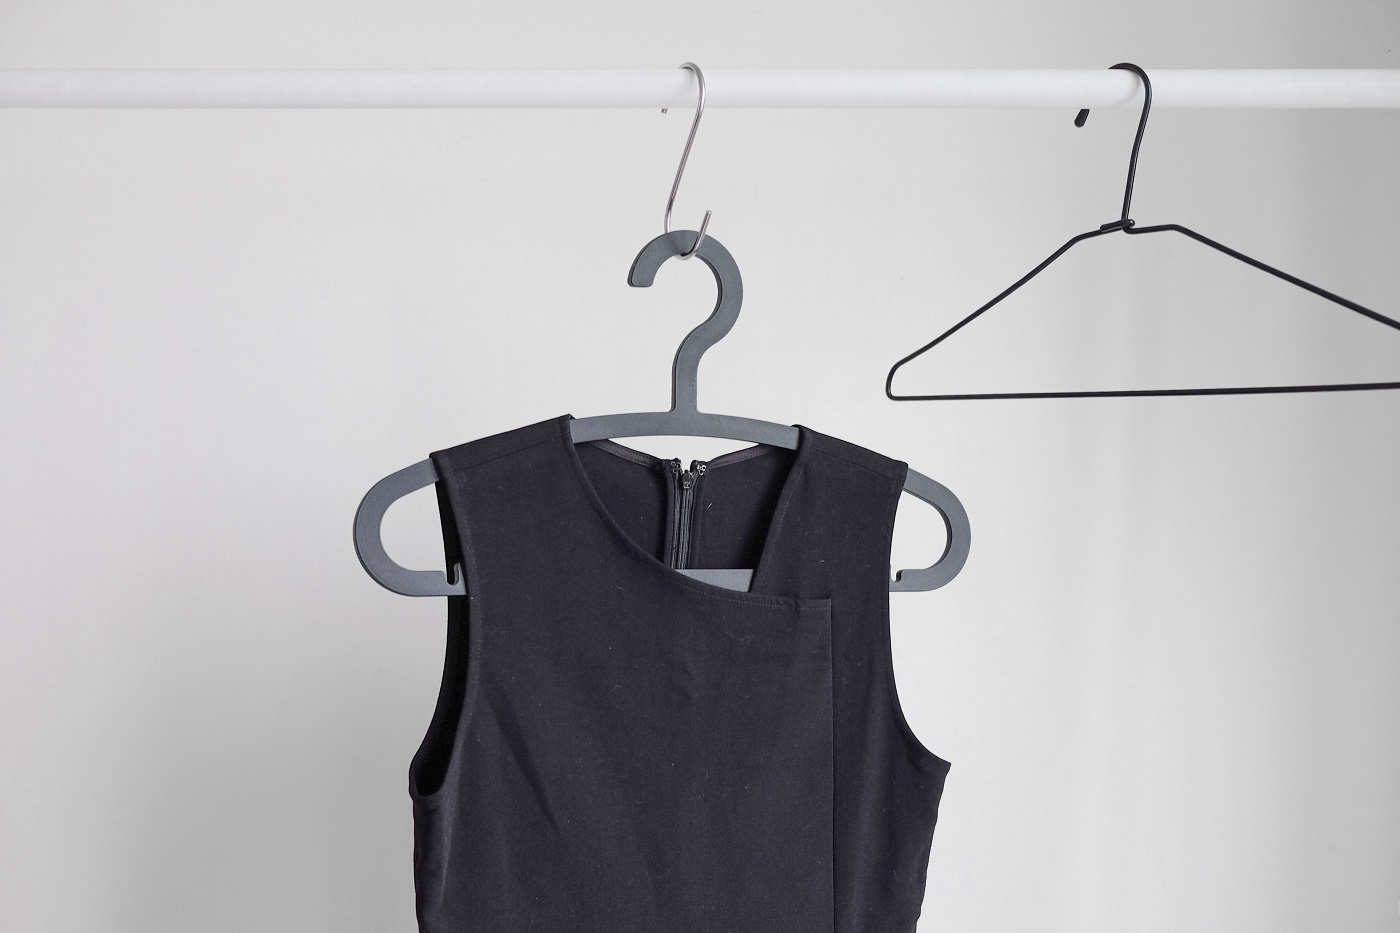 Black sleeveless dress on a hanger